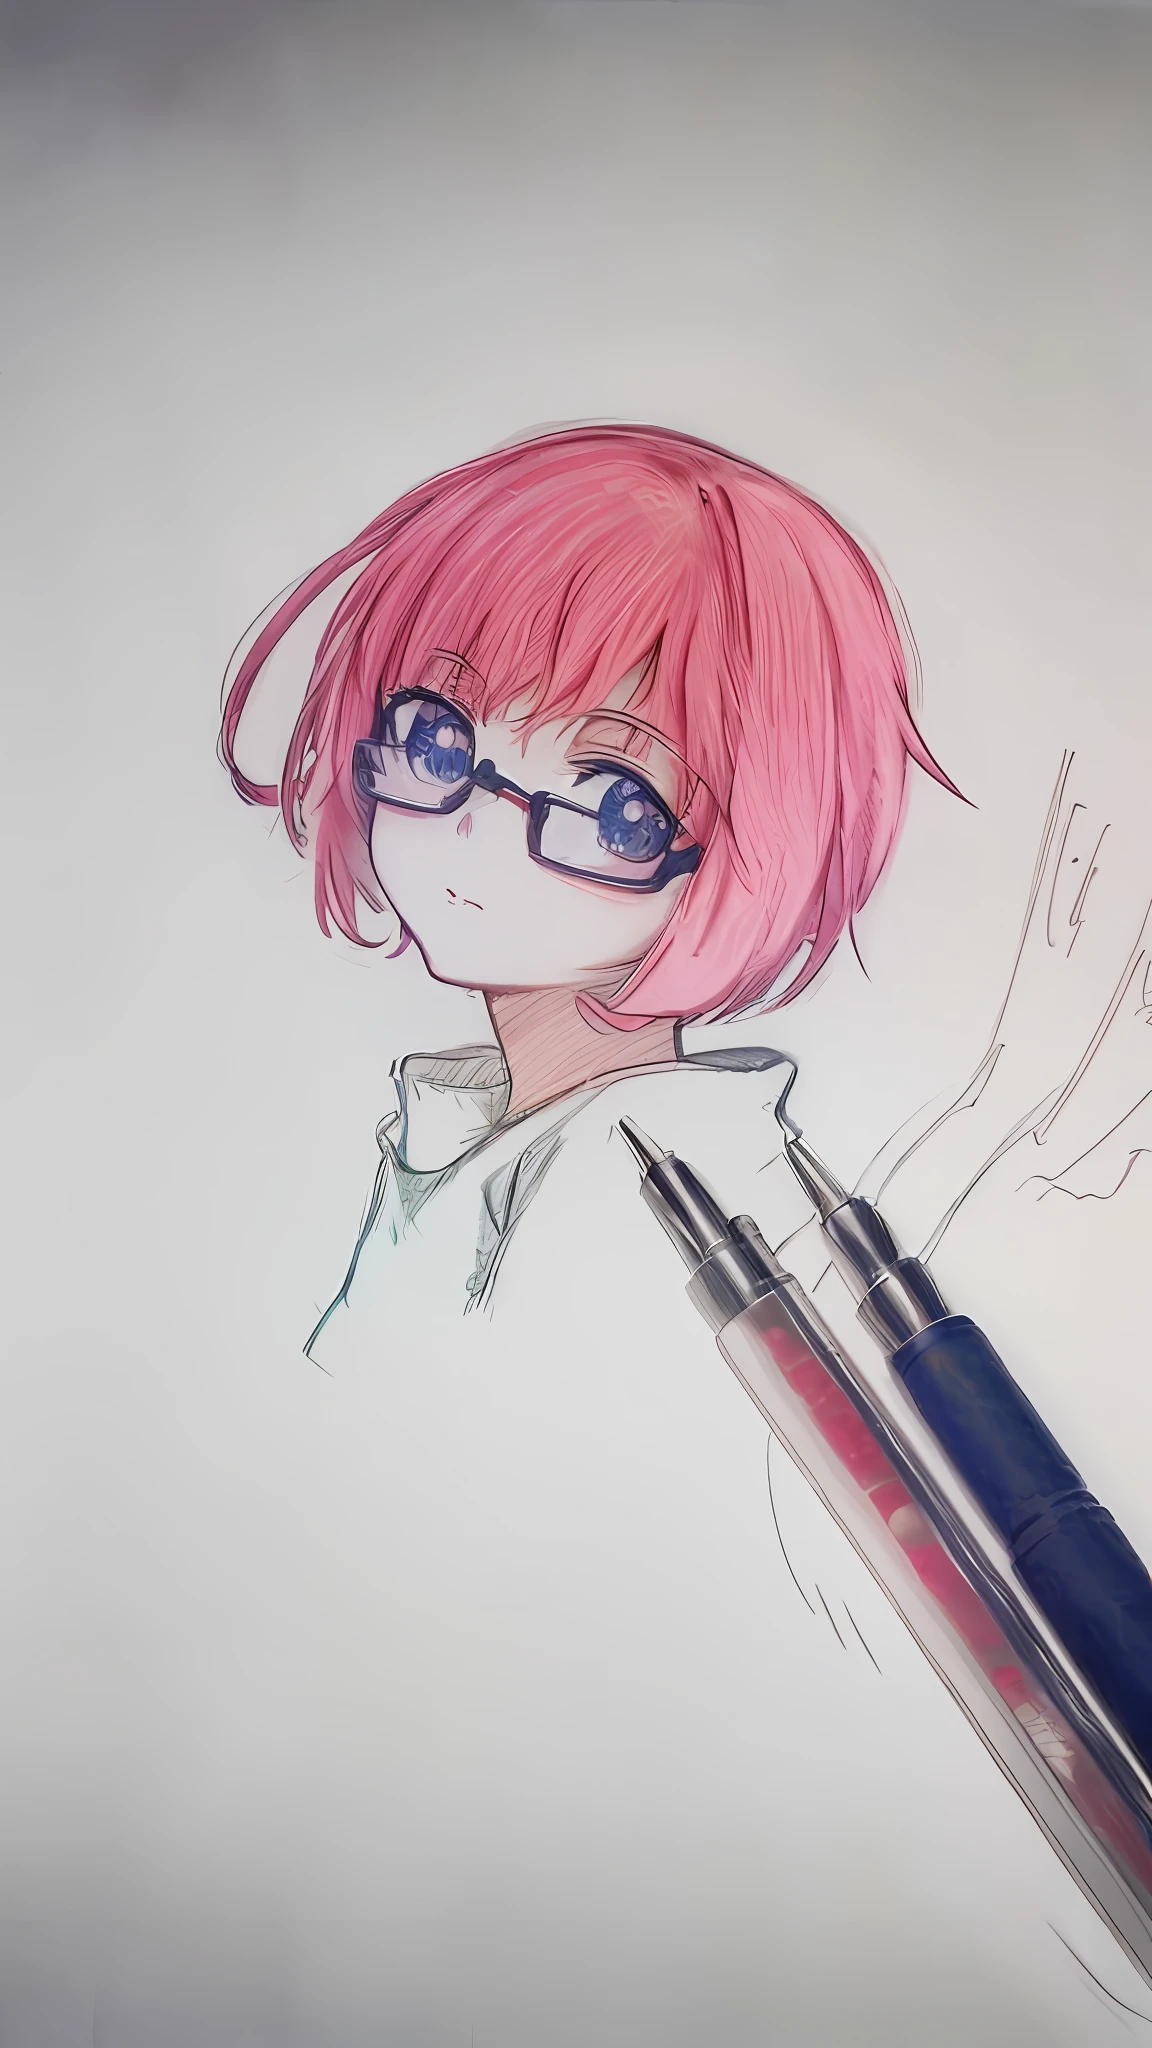 Zeichnung einer Frau mit Brille und rosa Haaren mit einem Stift, Manga-Stift, Anime-Skizze, Porträt im Anime-Stil, Zeichnung im Anime-Stil, halbrealistischer Anime-Stil, im Anime-Stil, Bleistift style, !Bleistift, flache Schattierung im Anime-Stil, realistischer Anime-Kunststil, eine Anime-Zeichnung, sauberer, detaillierter Anime-Stil, 2D-Anime-Stil, Anime-Realismus-Stil, stift zeichnen